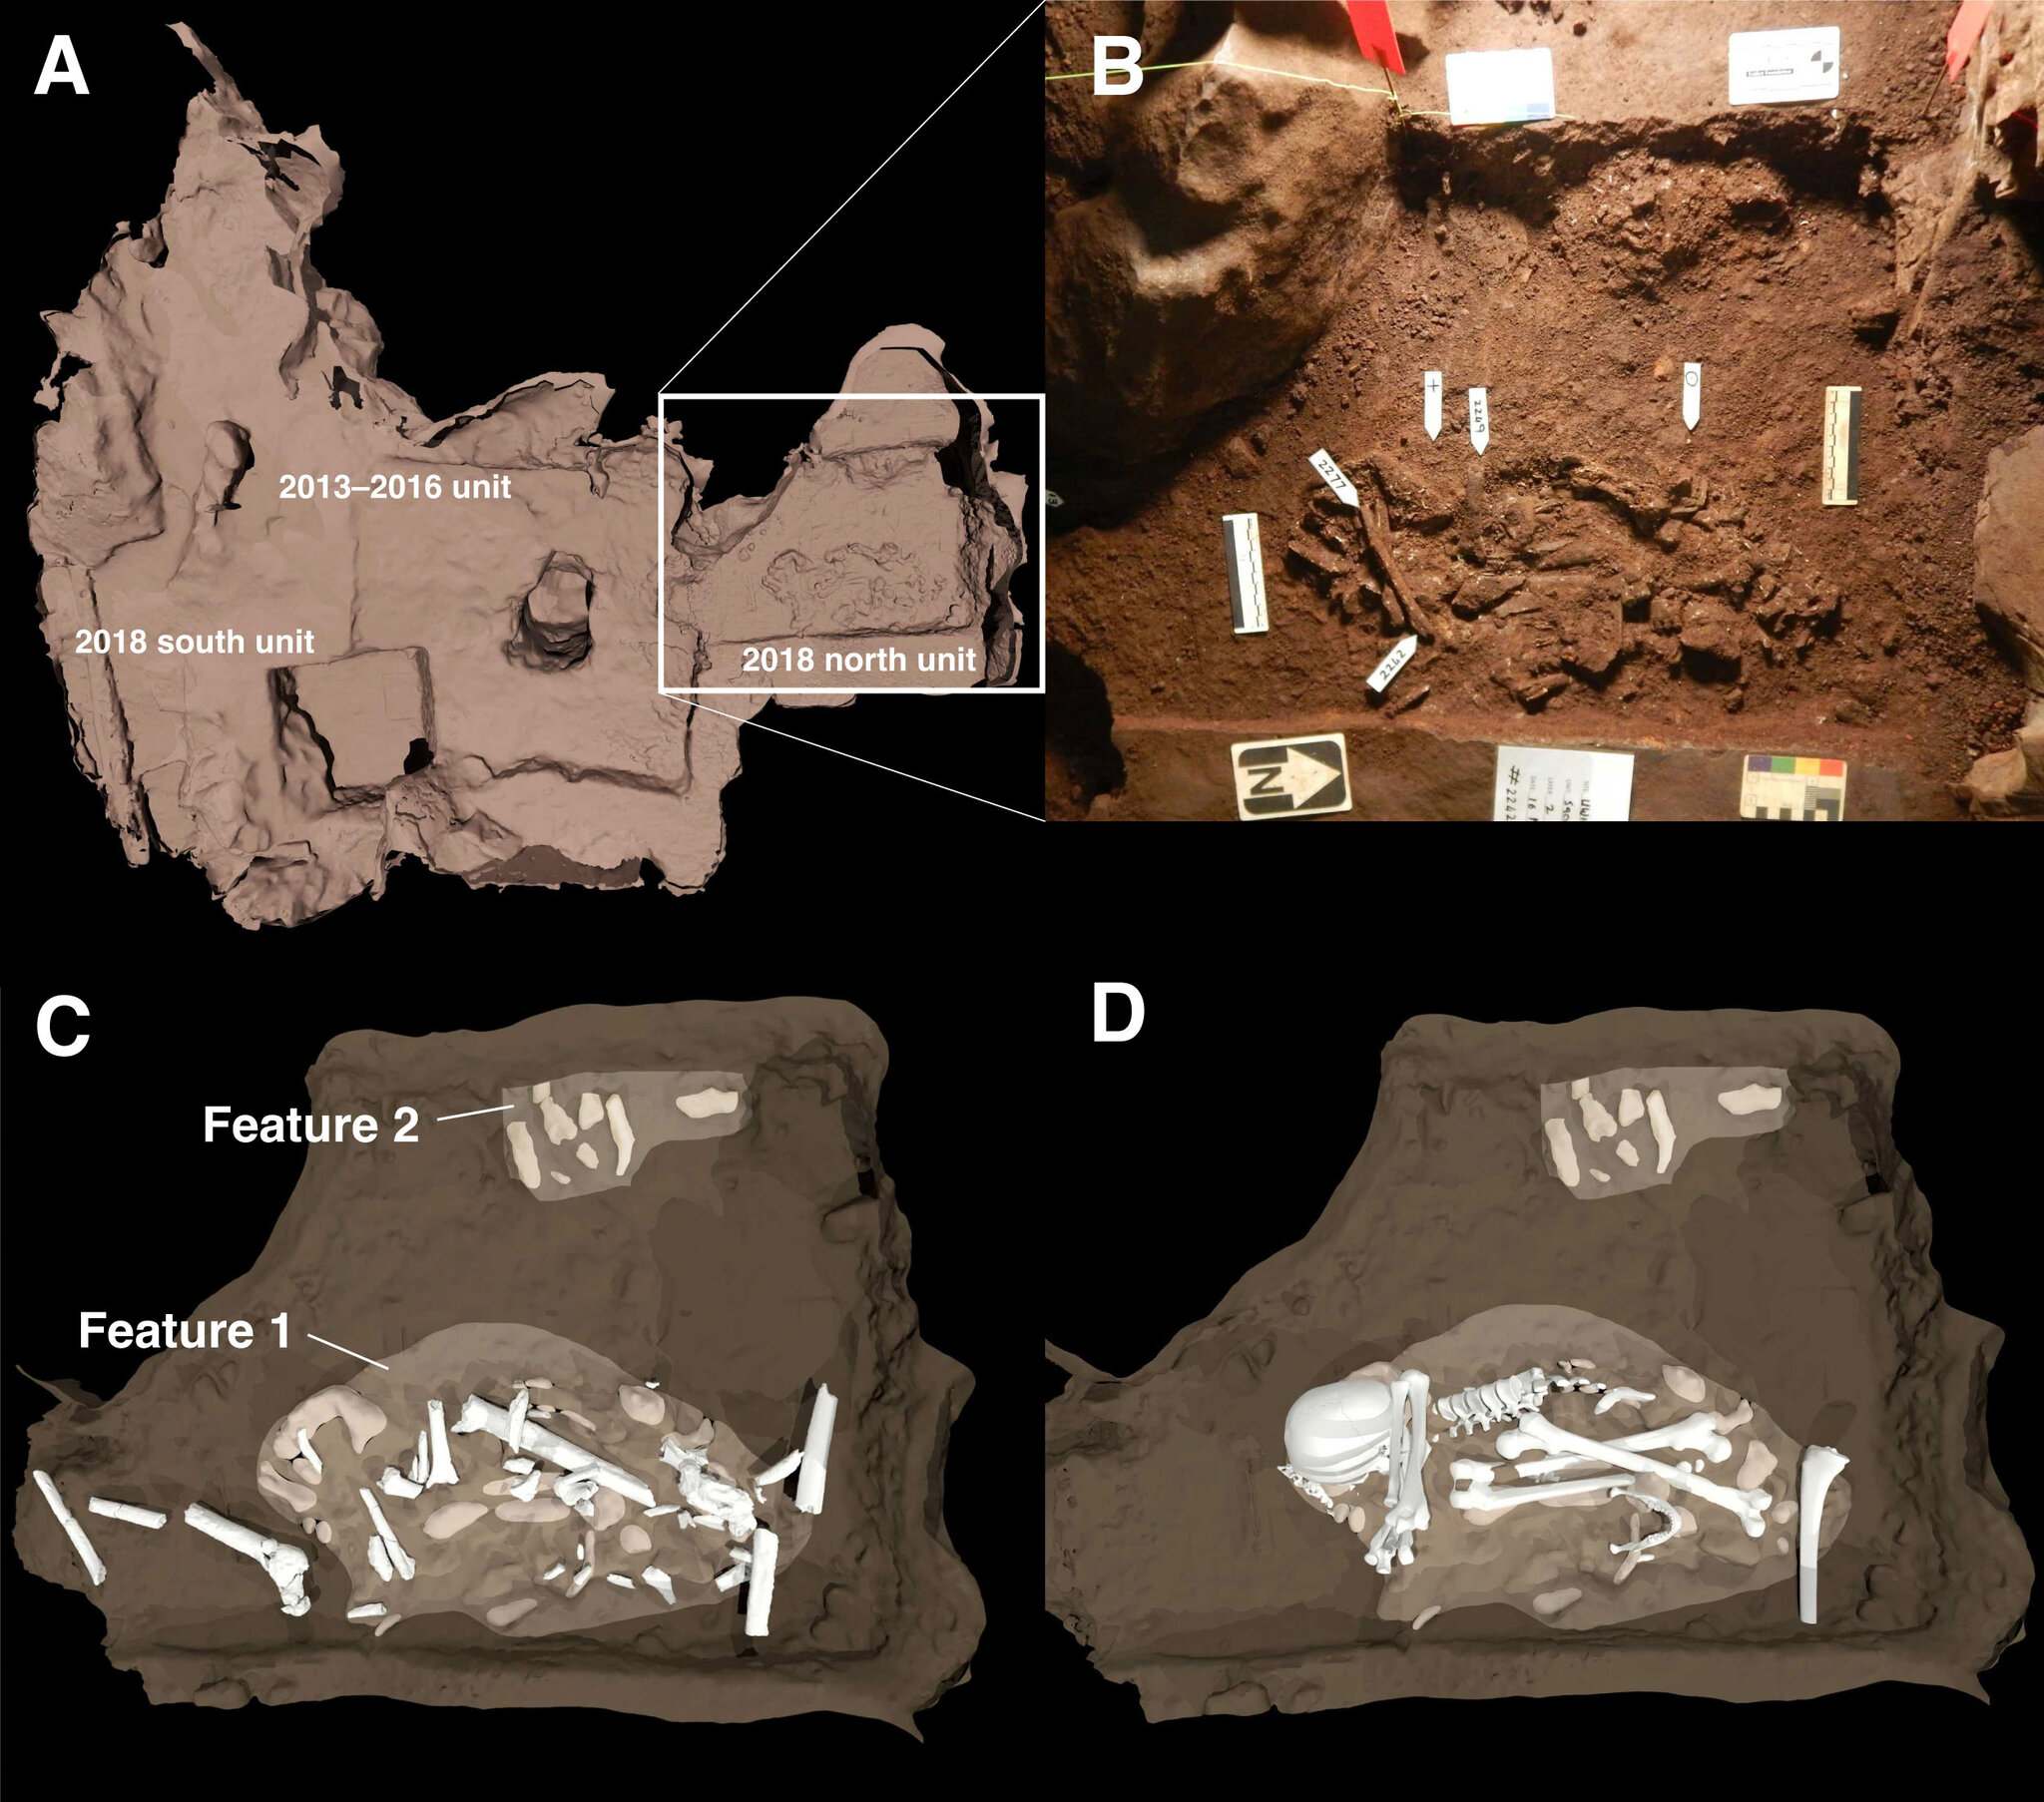 Dviejų laidojimo požymių, aptiktų Kylančios žvaigždės urvo Dinaledi kameroje, schema. (A) palaidojimų padėtis, palyginti su 2013–2016 m. kasinėjimais, nurodyta kvadratiniais plotais. (B) Tai yra pagrindinių laidojimo ypatybių nuotrauka. 1 bruožas yra Homo naledi suaugusio egzemplioriaus kūnas. 2 bruožas rodo bent vieną nepilnamečio kūną laidojimo vietos pakraštyje. (C) ir (D) yra iliustracijos, parodančios, kaip kaulai buvo išdėstyti kapų viduje.